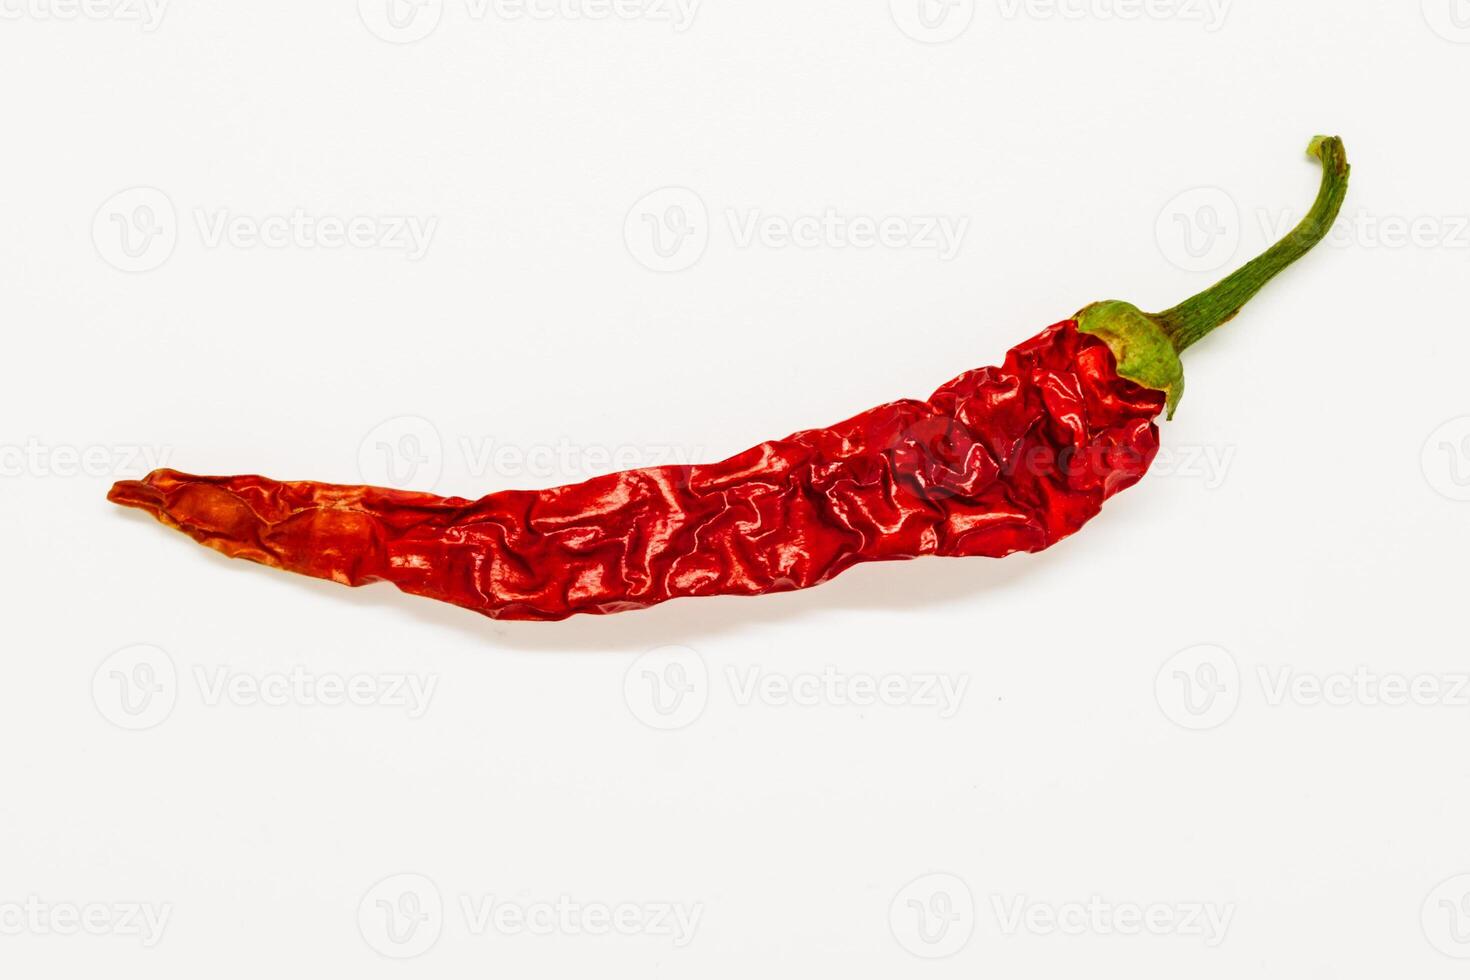 droog rood Chili peper, veel een uitkering, stimuleert de eetlust en bloed circulatie, verlicht spier pijn, antibacterieel, paprika annuum foto